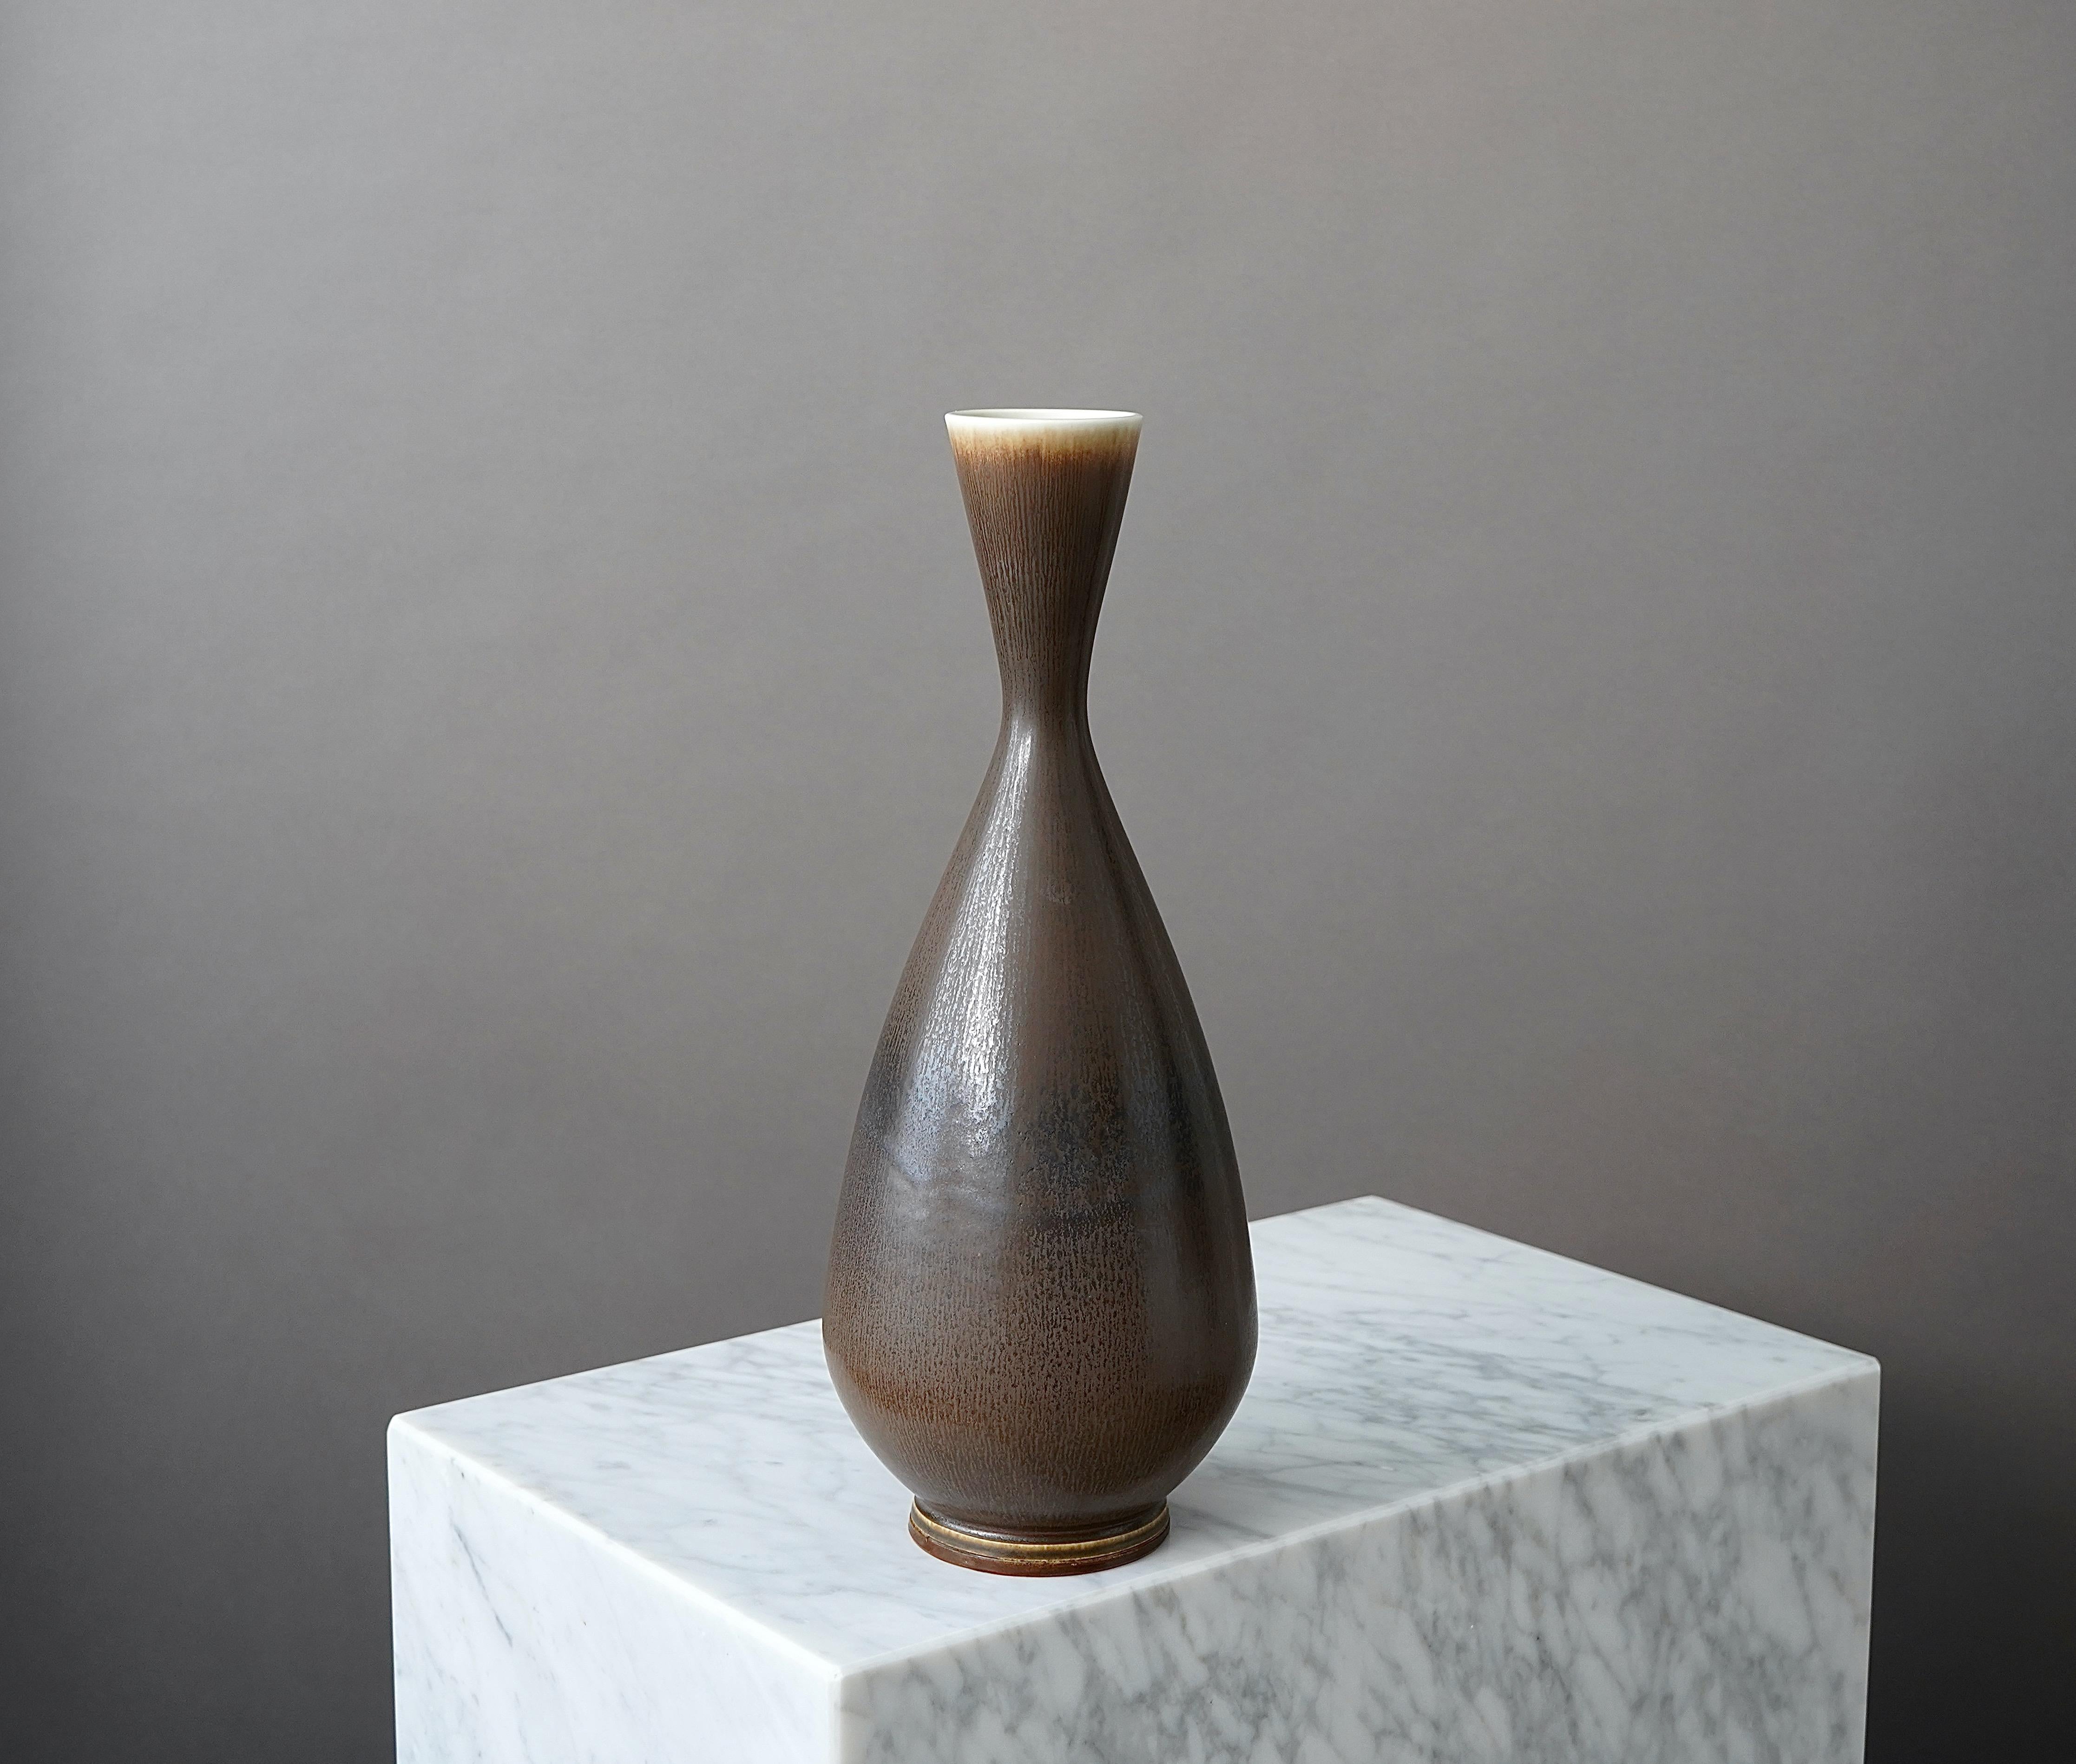 Turned Large Stoneware Vase by Berndt Friberg for Gustavsberg Studio, Sweden, 1963 For Sale